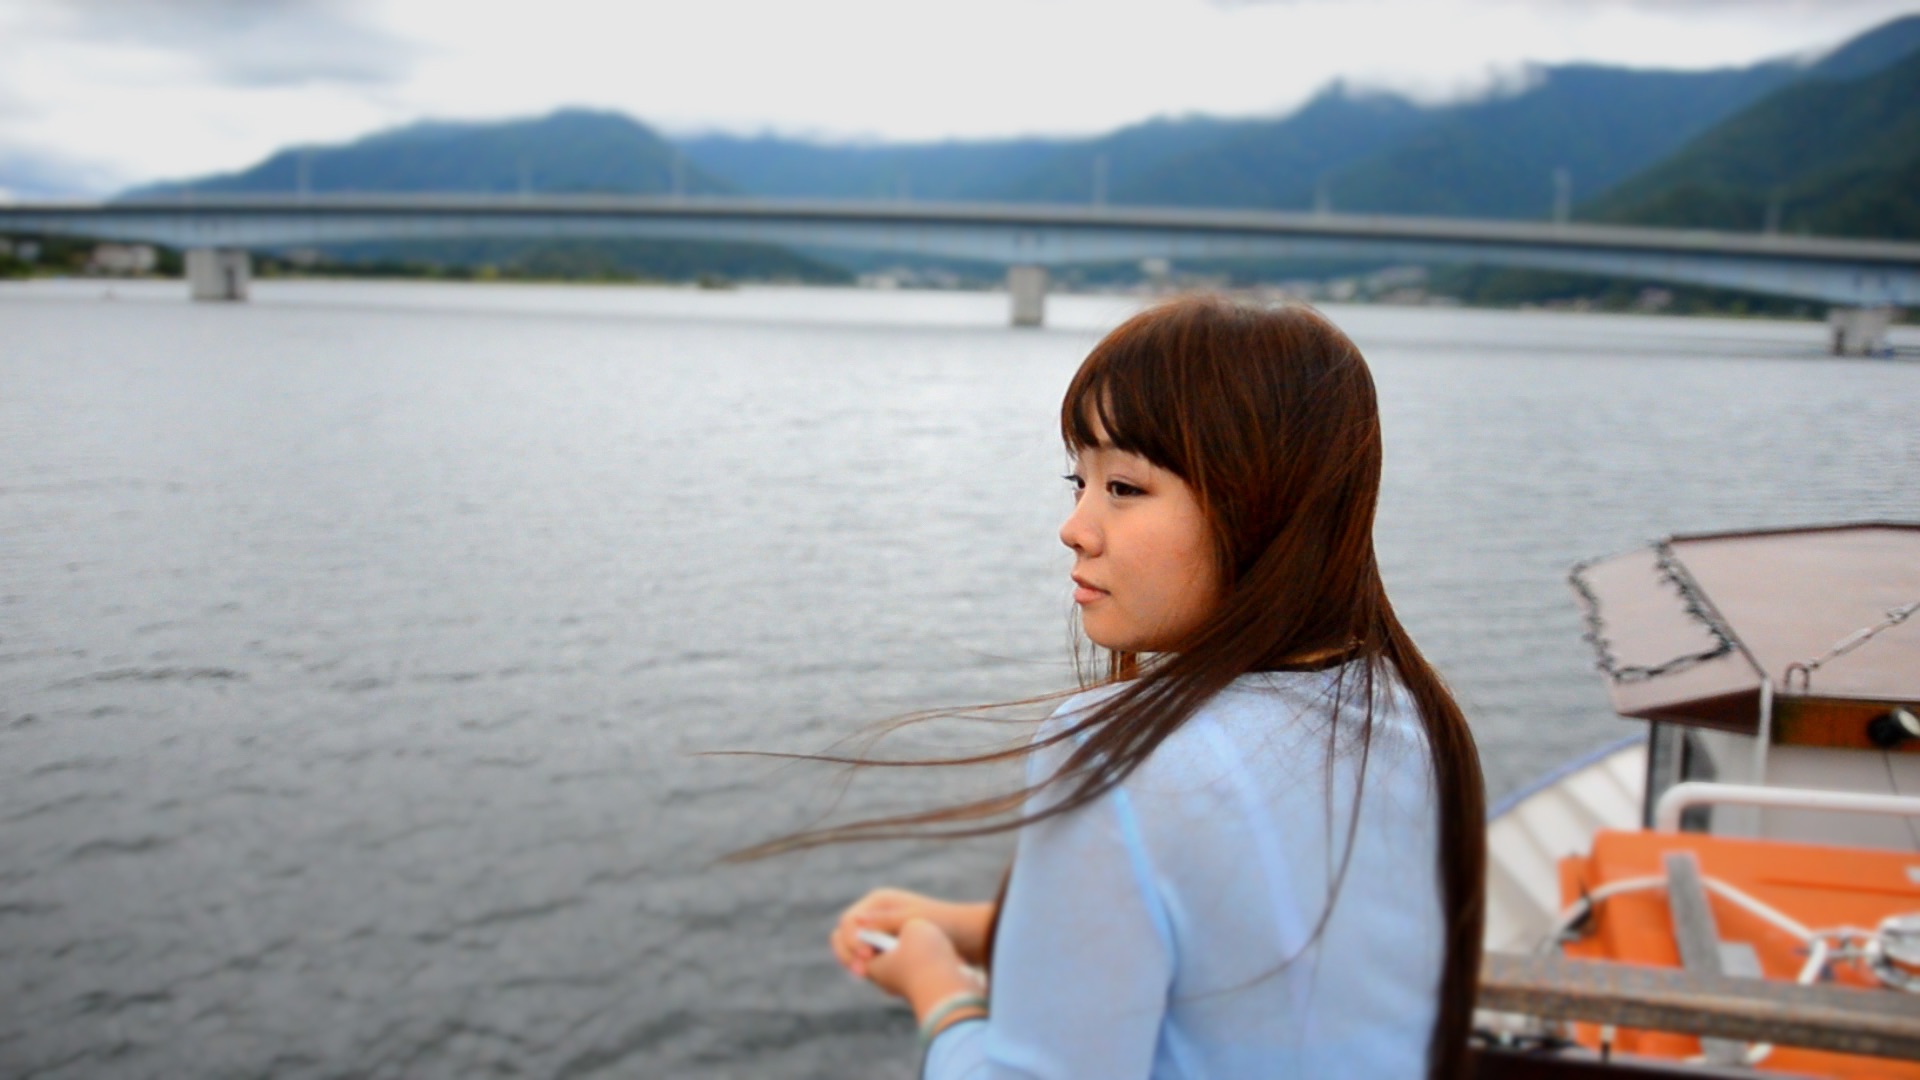 Lake Kawaguchiko Pleasure-Cruser “Ensoleille”